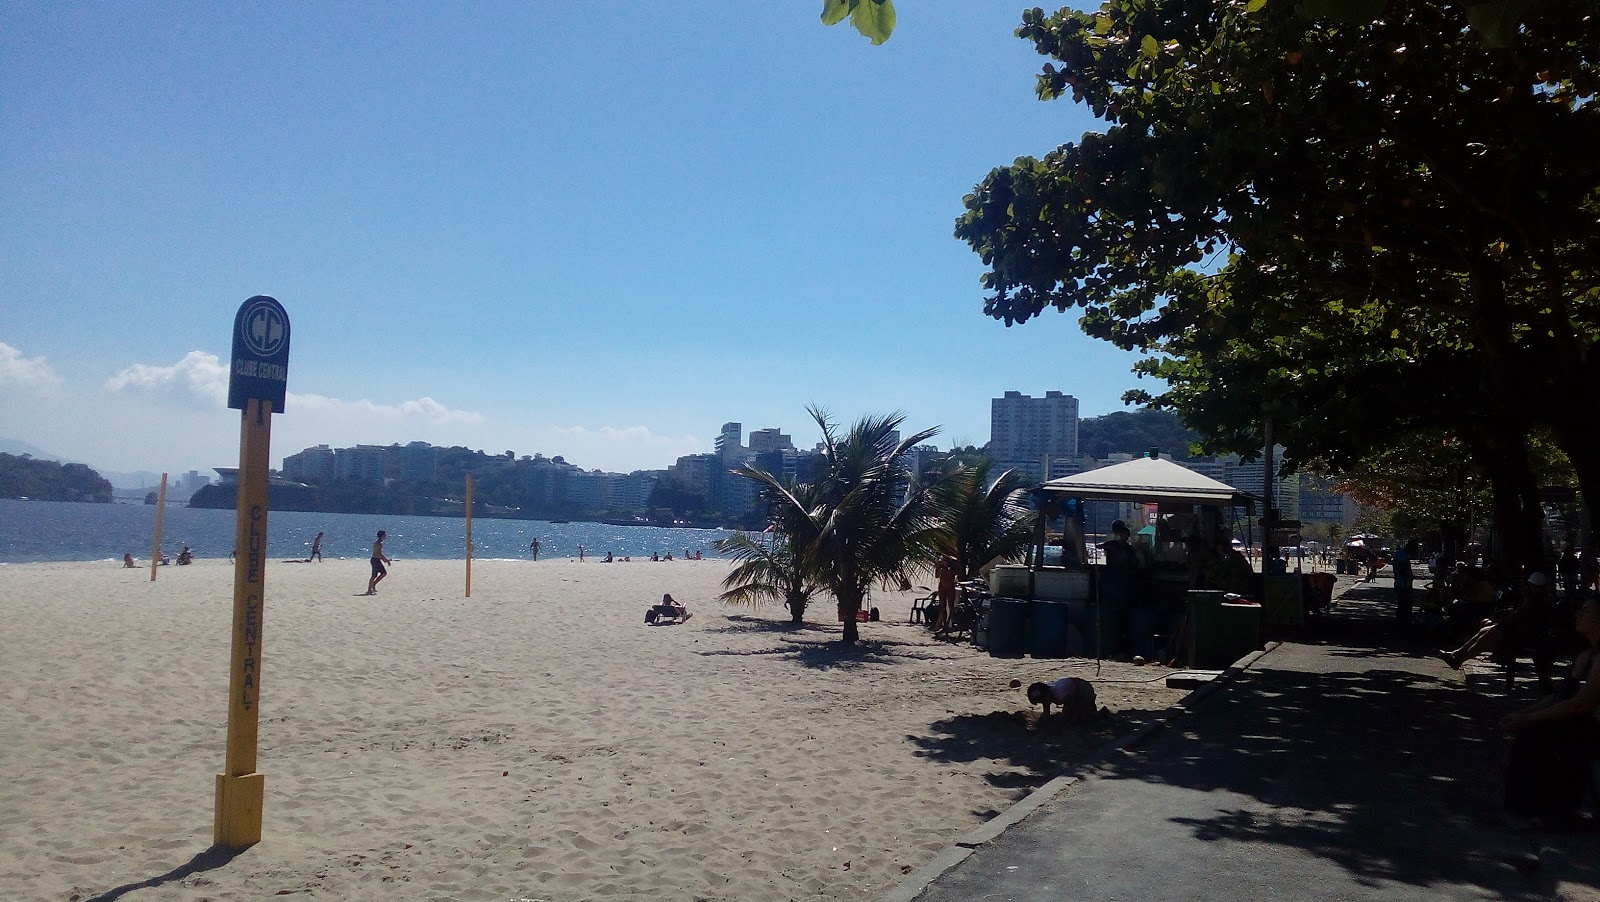 Praia de Icarai'in fotoğrafı vahşi alan